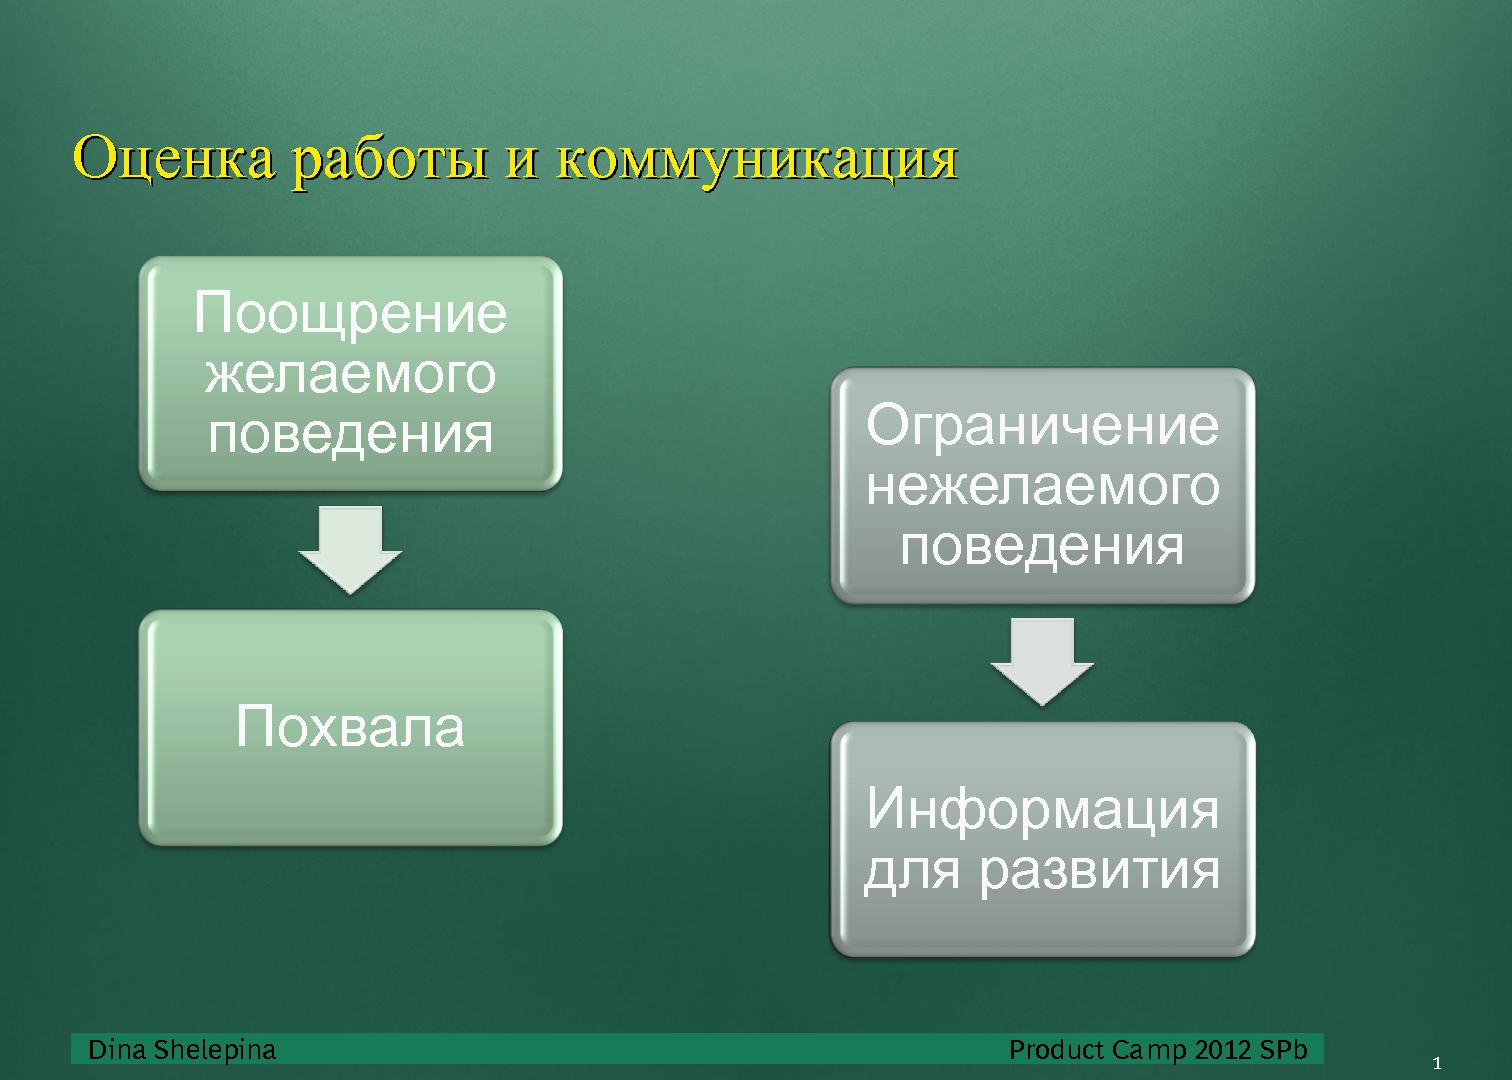 Файл:Взаимодействие в команде (Дина Шелепина, ProductCampSPB-2012).pdf